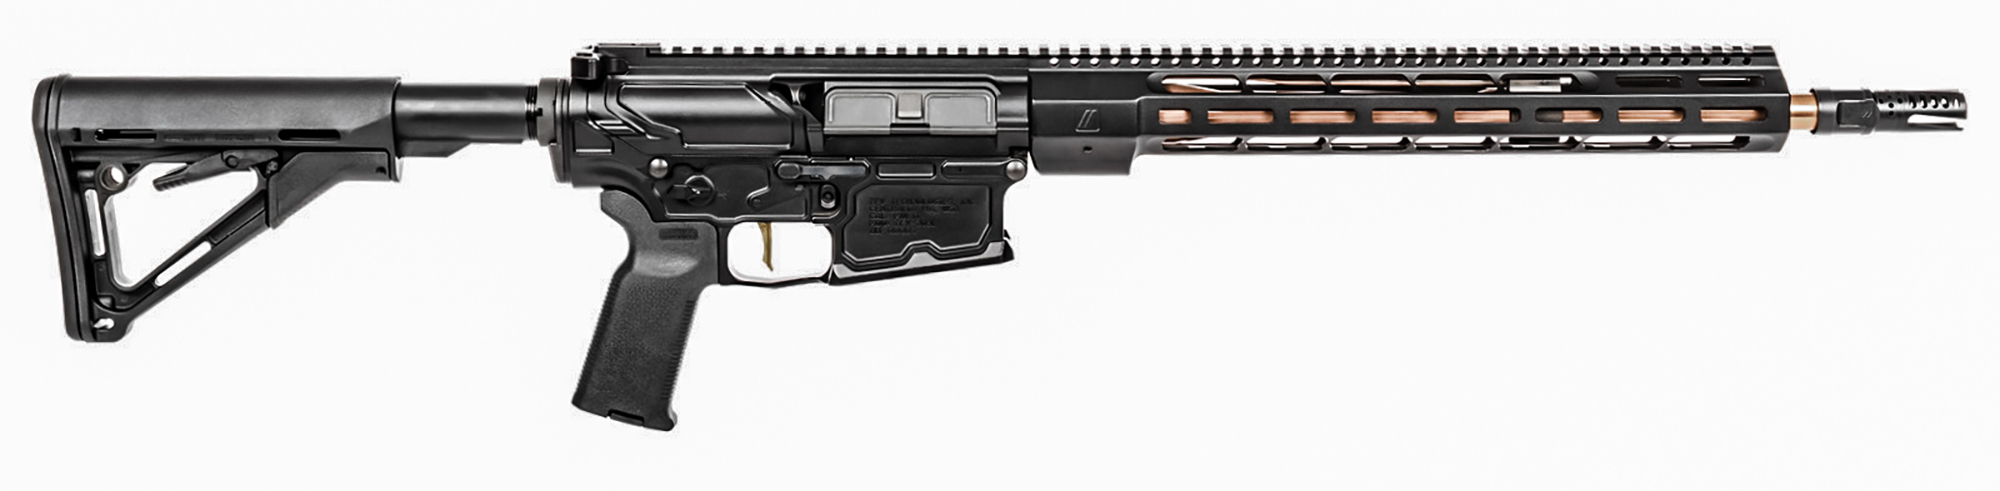 ZEV Technologies Large Frame Billet .308 long-range rifles